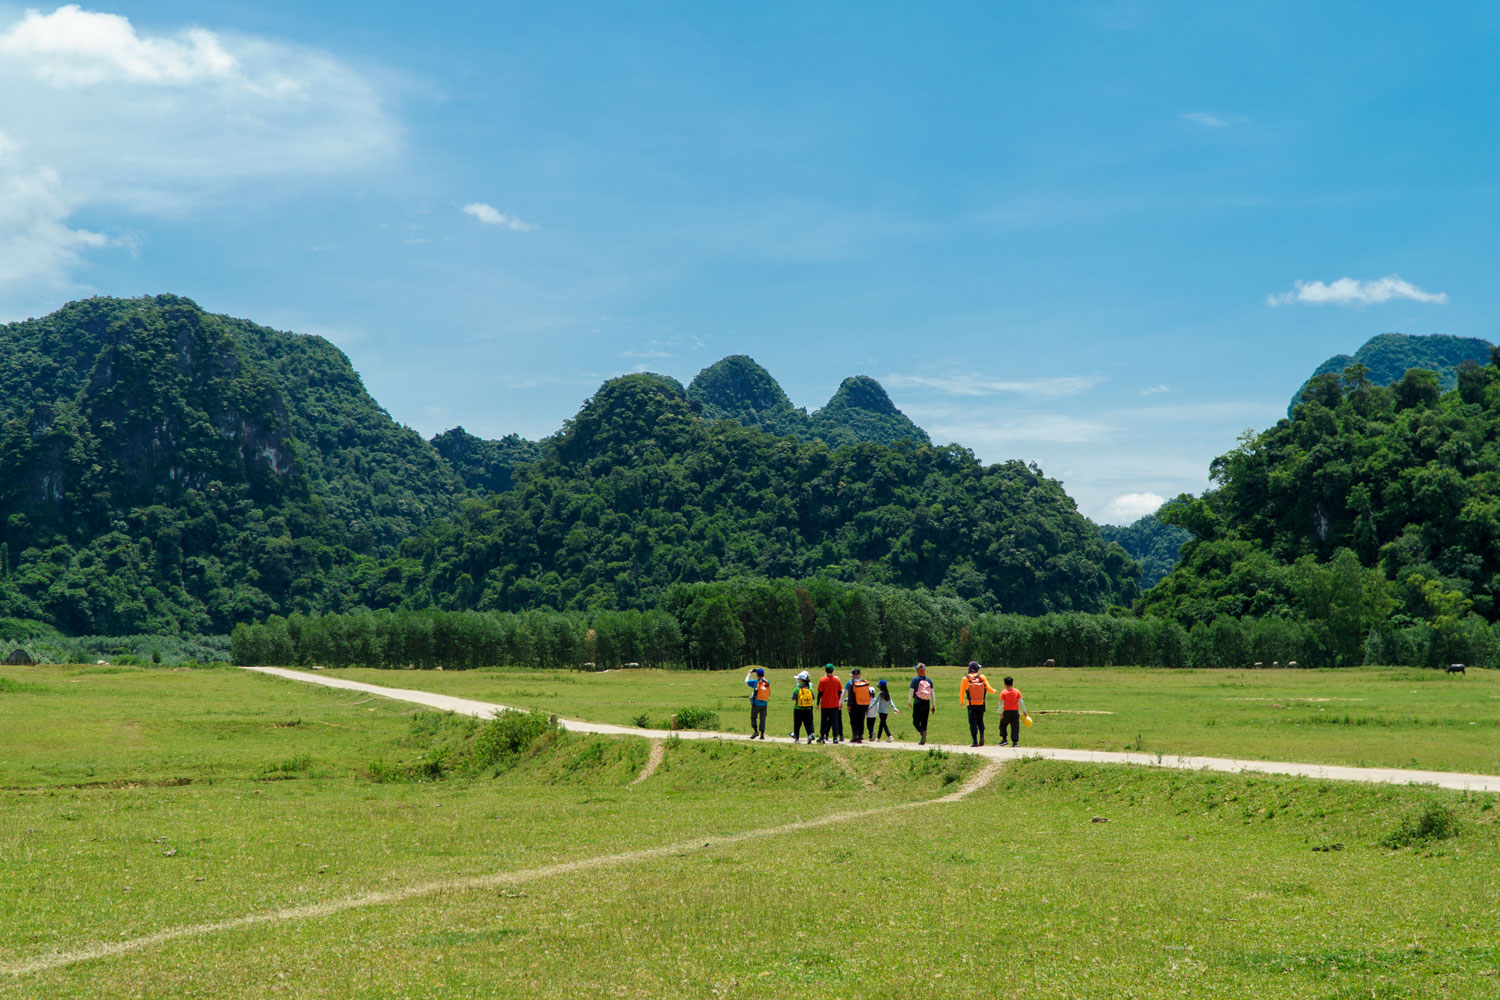 Tour gia đình khám phá Tú Làn sẽ cho bố mẹ và bé khám phá thiên nhiên Tú Làn tuyệt đẹp cùng nhiều hoạt động bổ ích giữa rừng xanh.